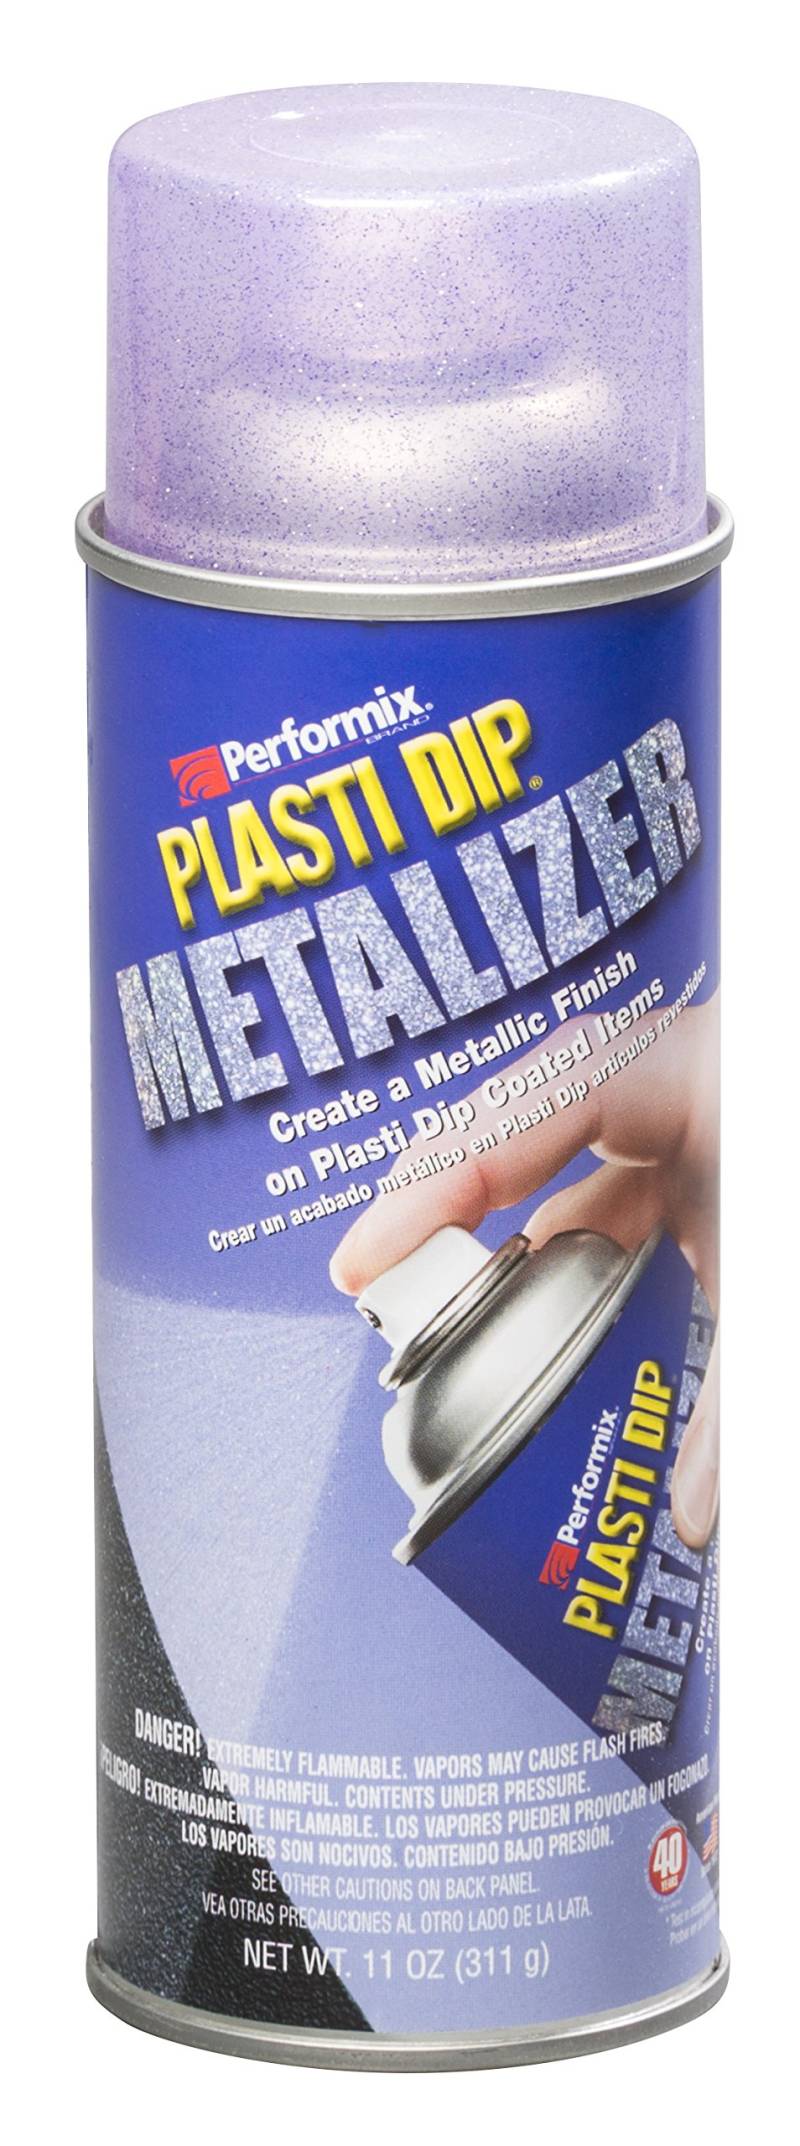 Plasti Dip Sprühfolie Sprühdose Violett Metalizer - 325 ml - Original Performix USA Produkt von Plasti Dip